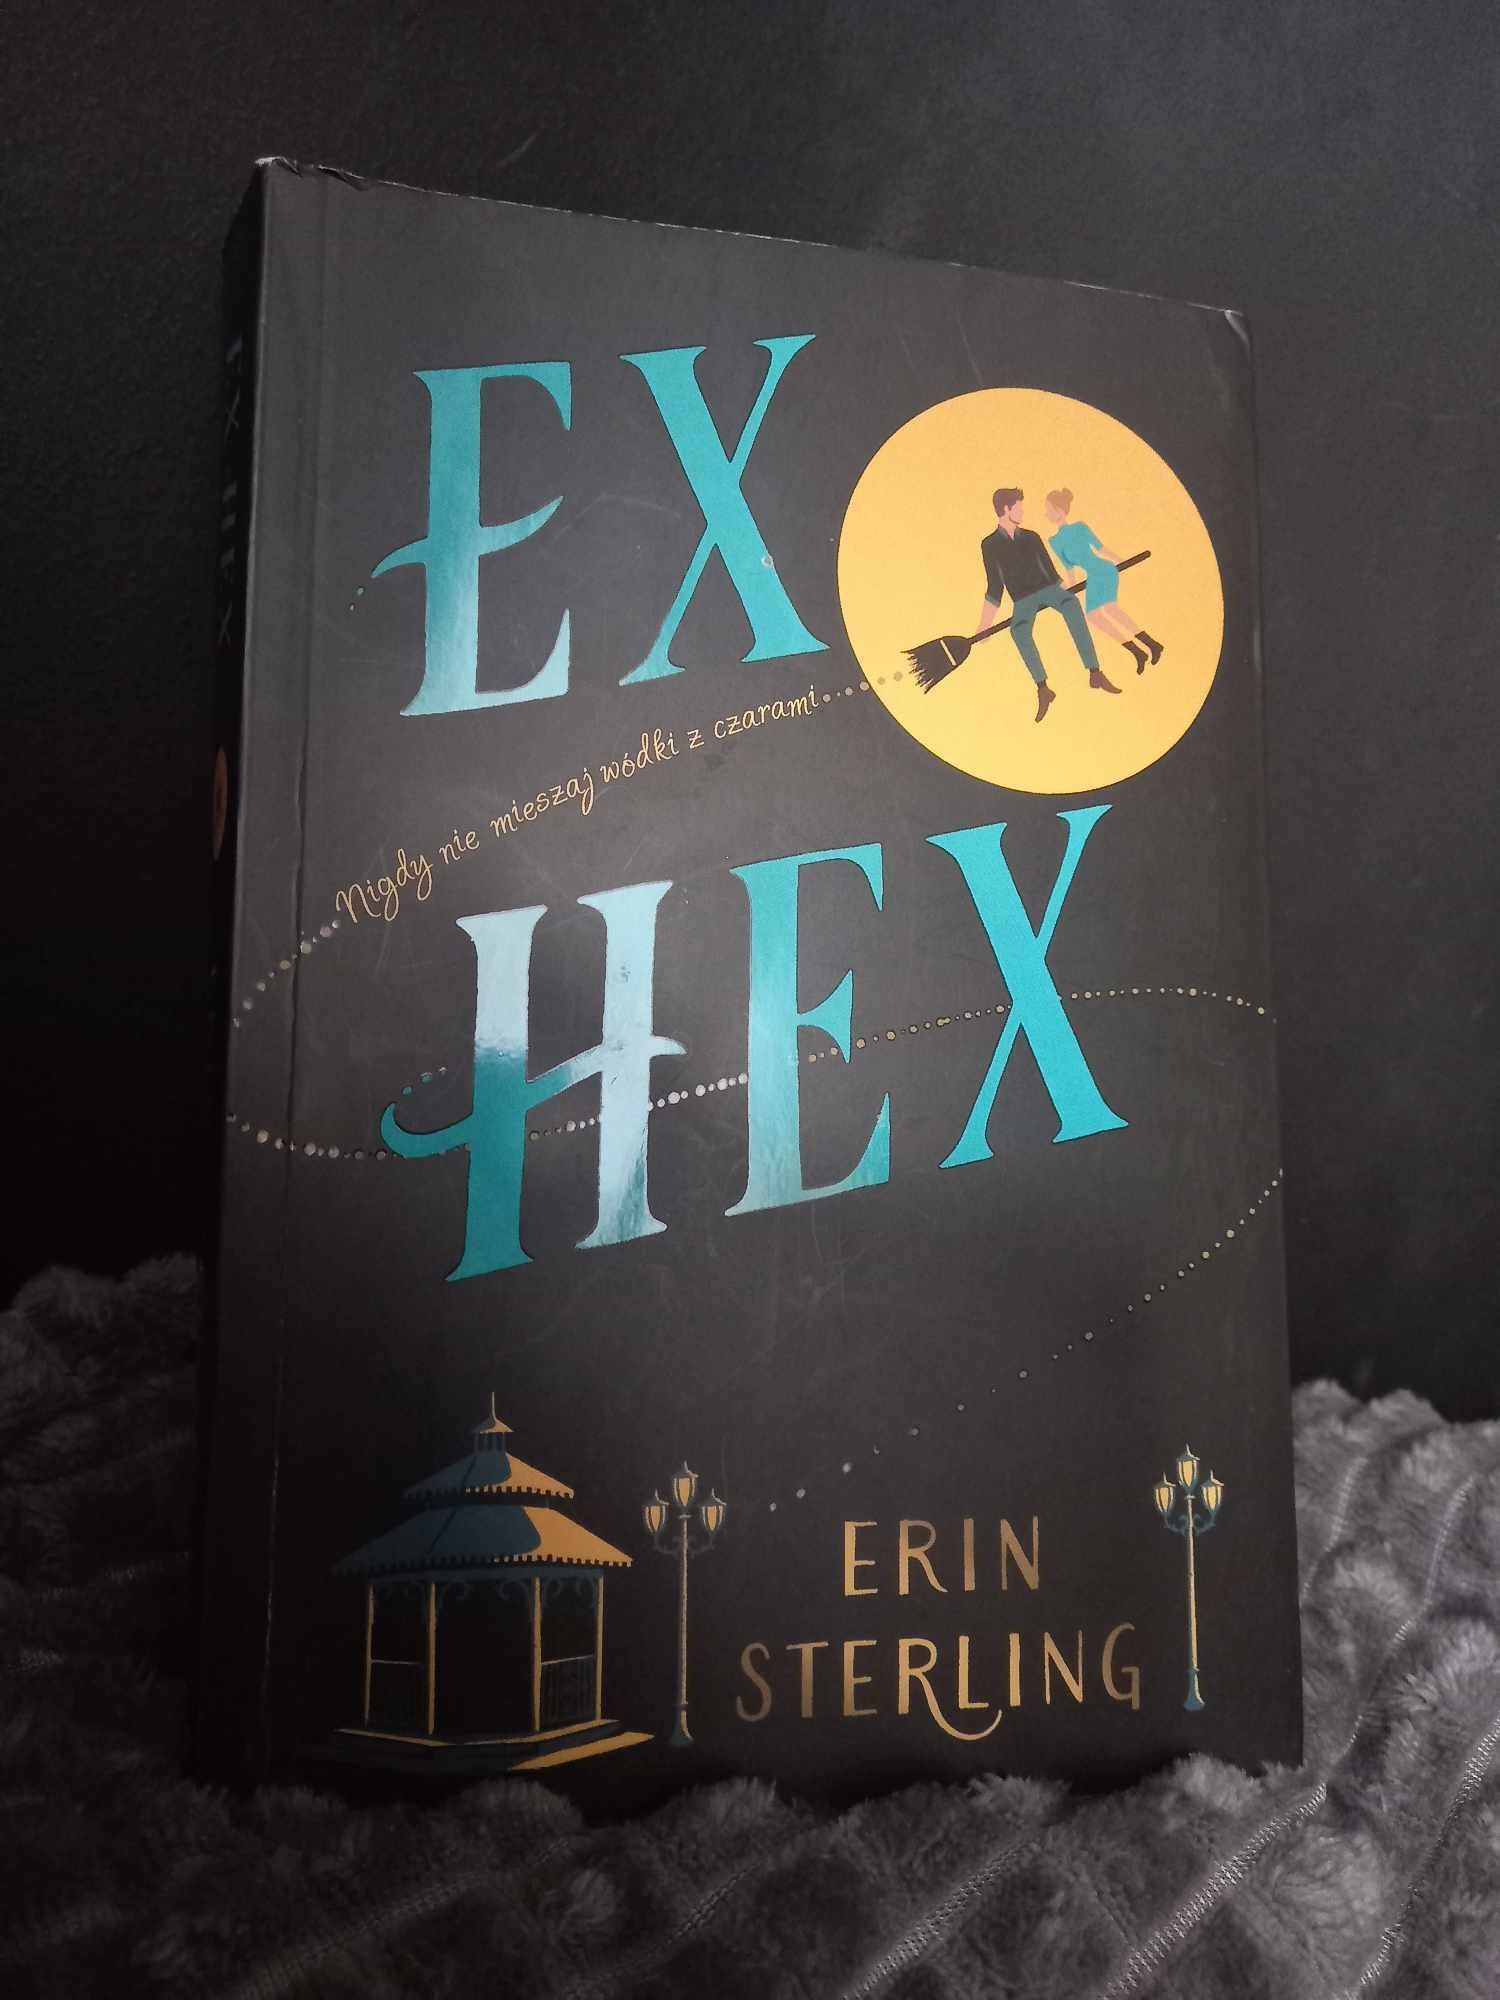 Ex hex -erin sterling